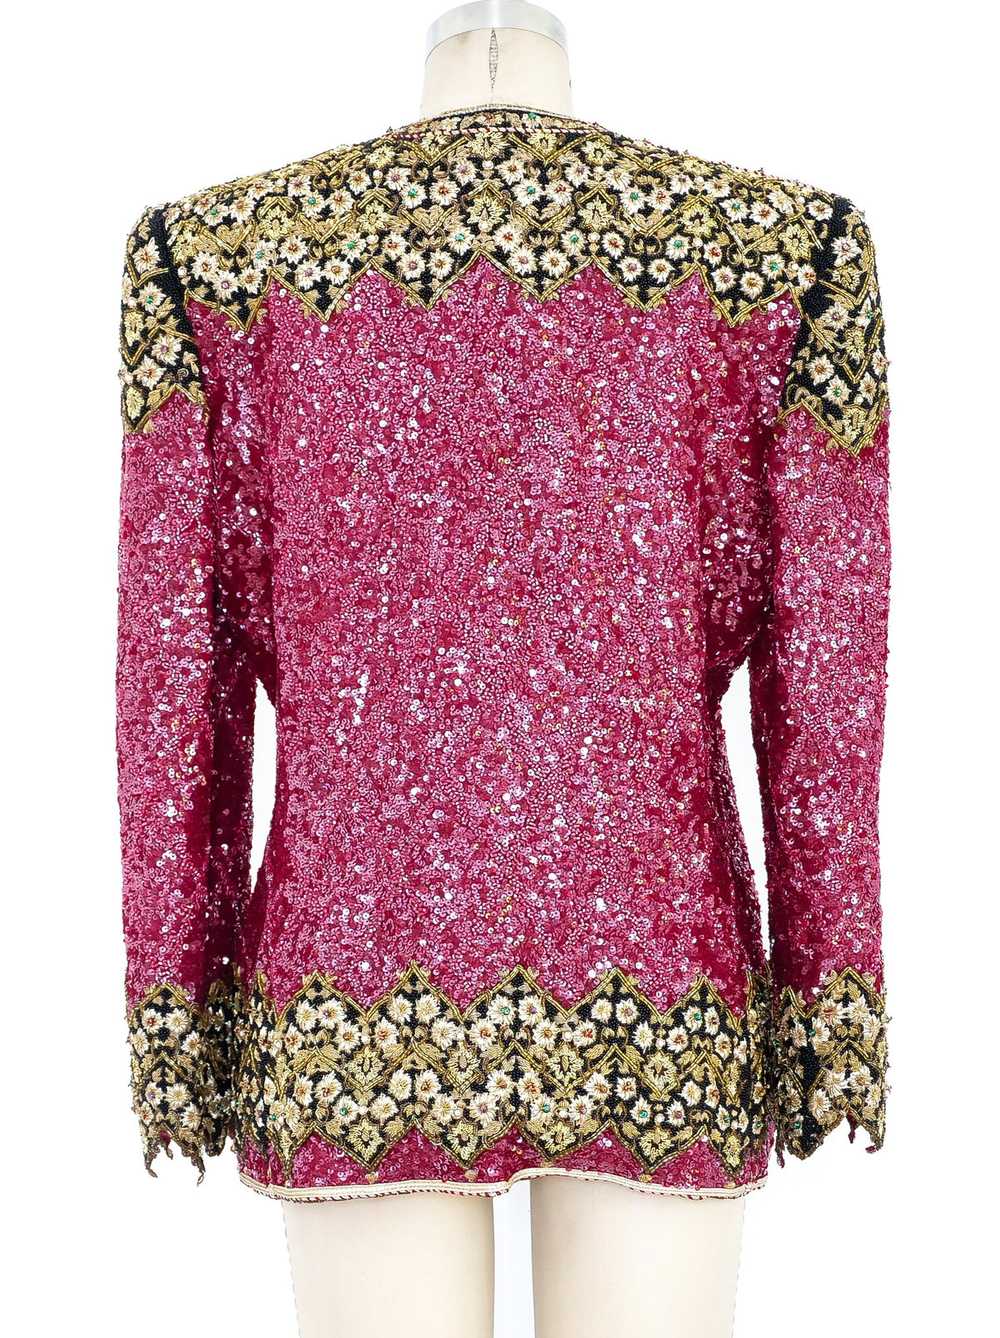 Mary McFadden Sequin Embellished Jacket - image 5